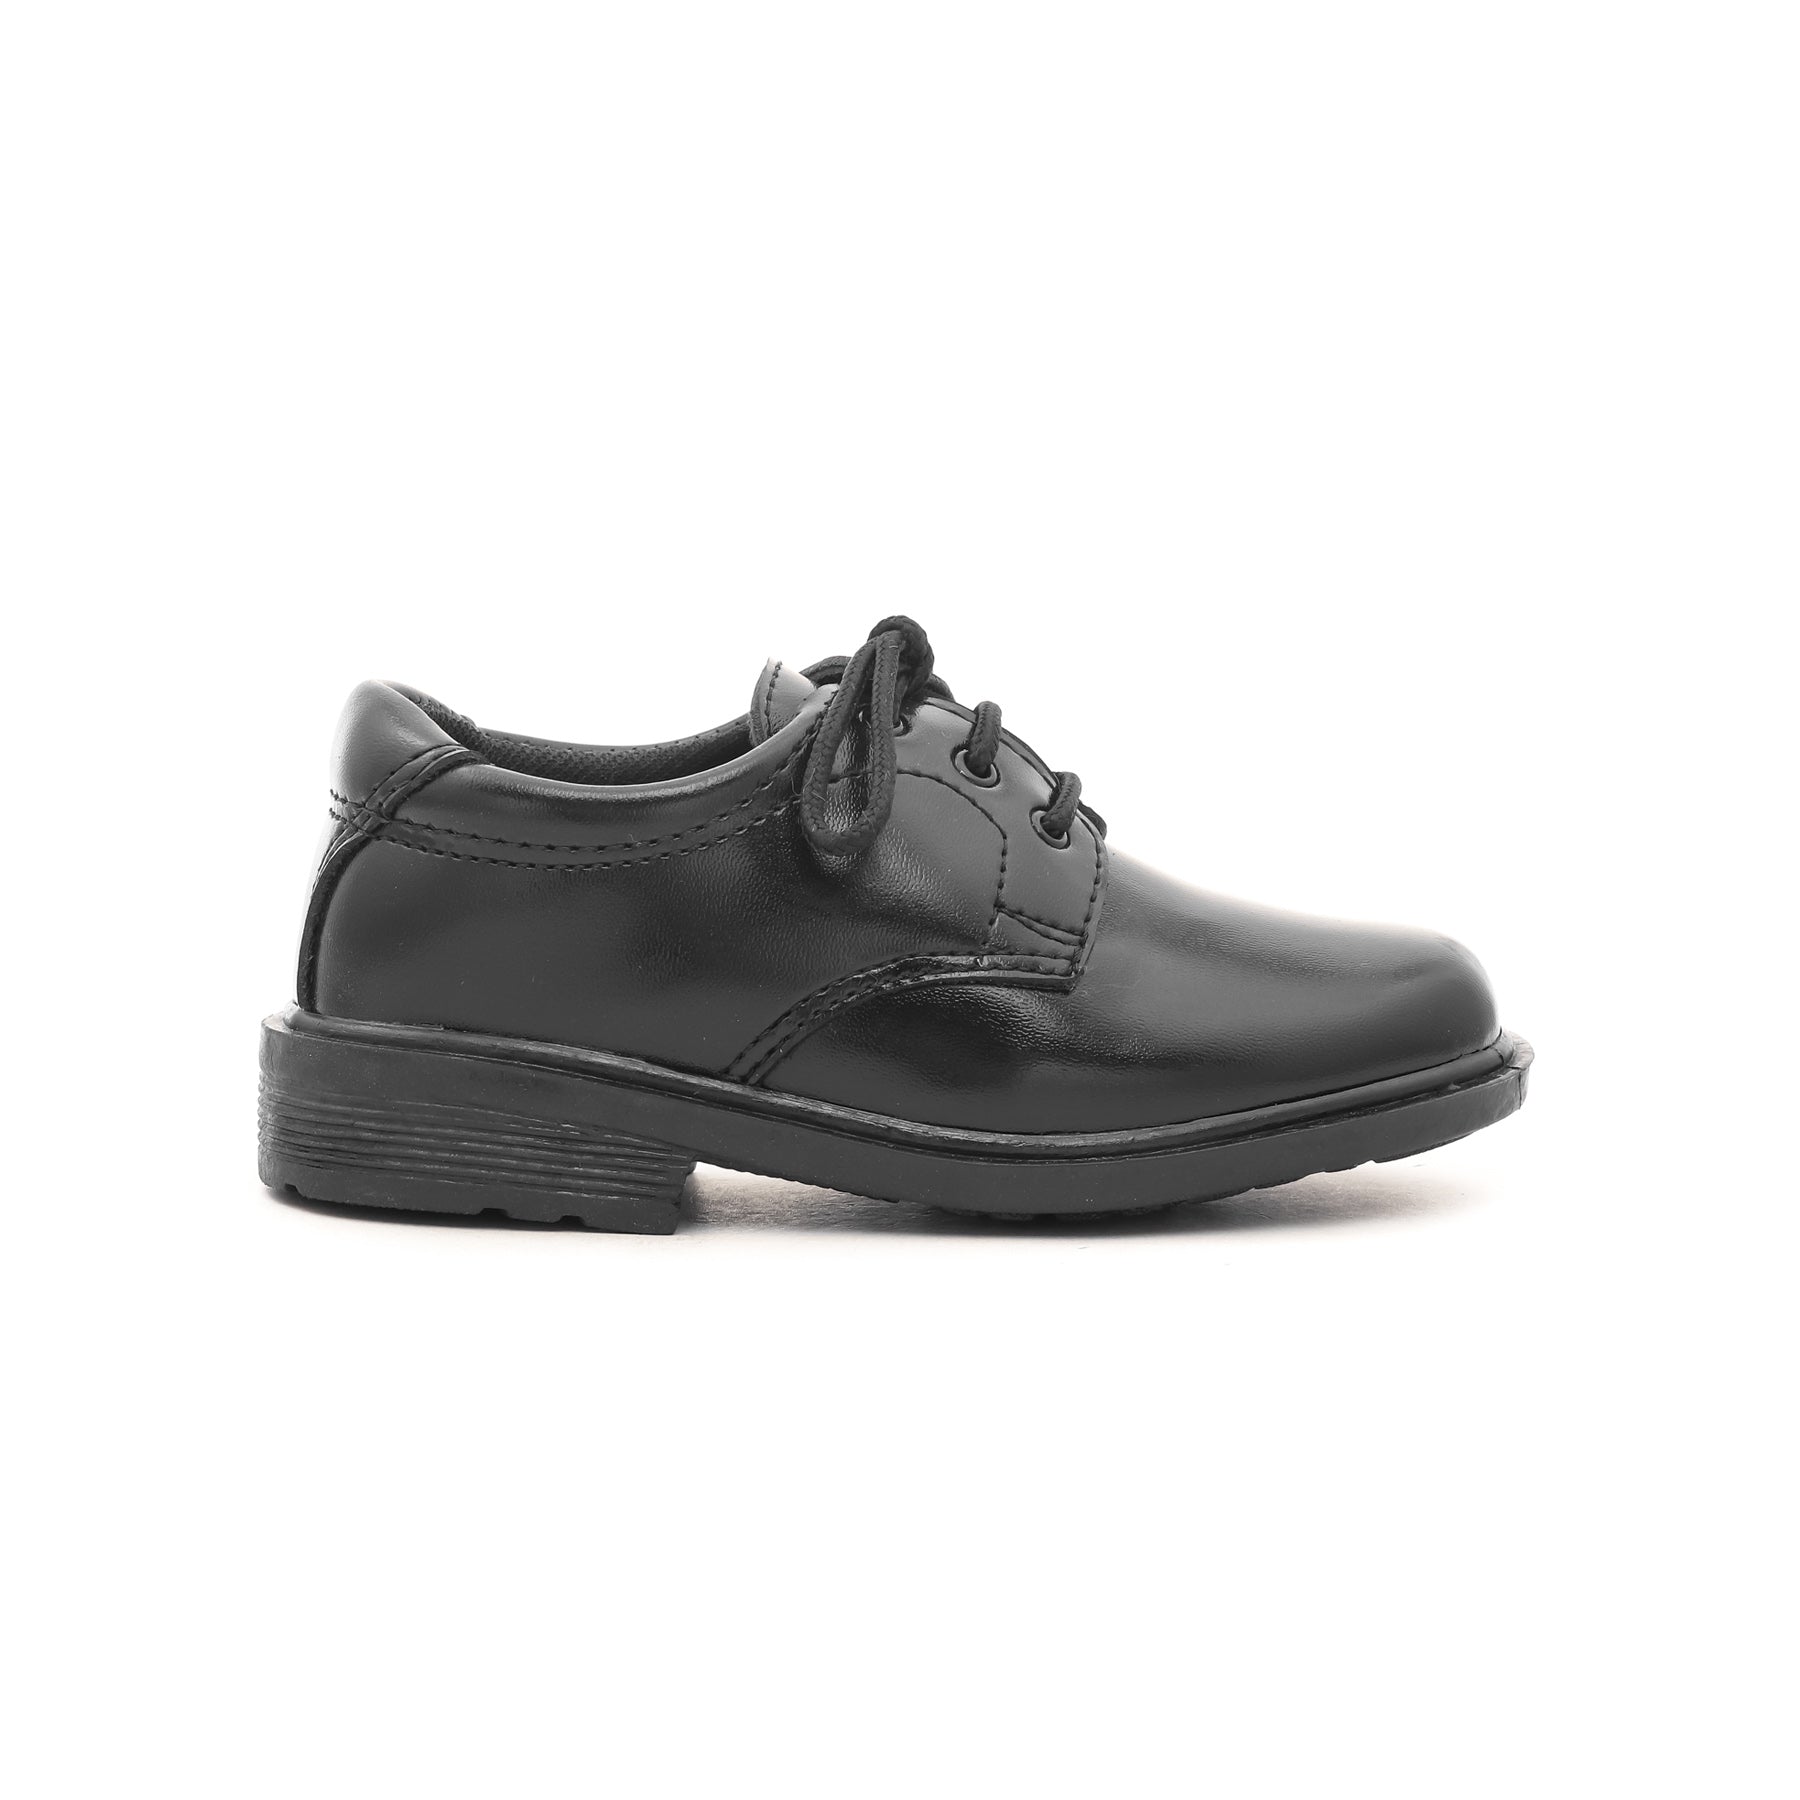 Boys Black School Shoes SK1056